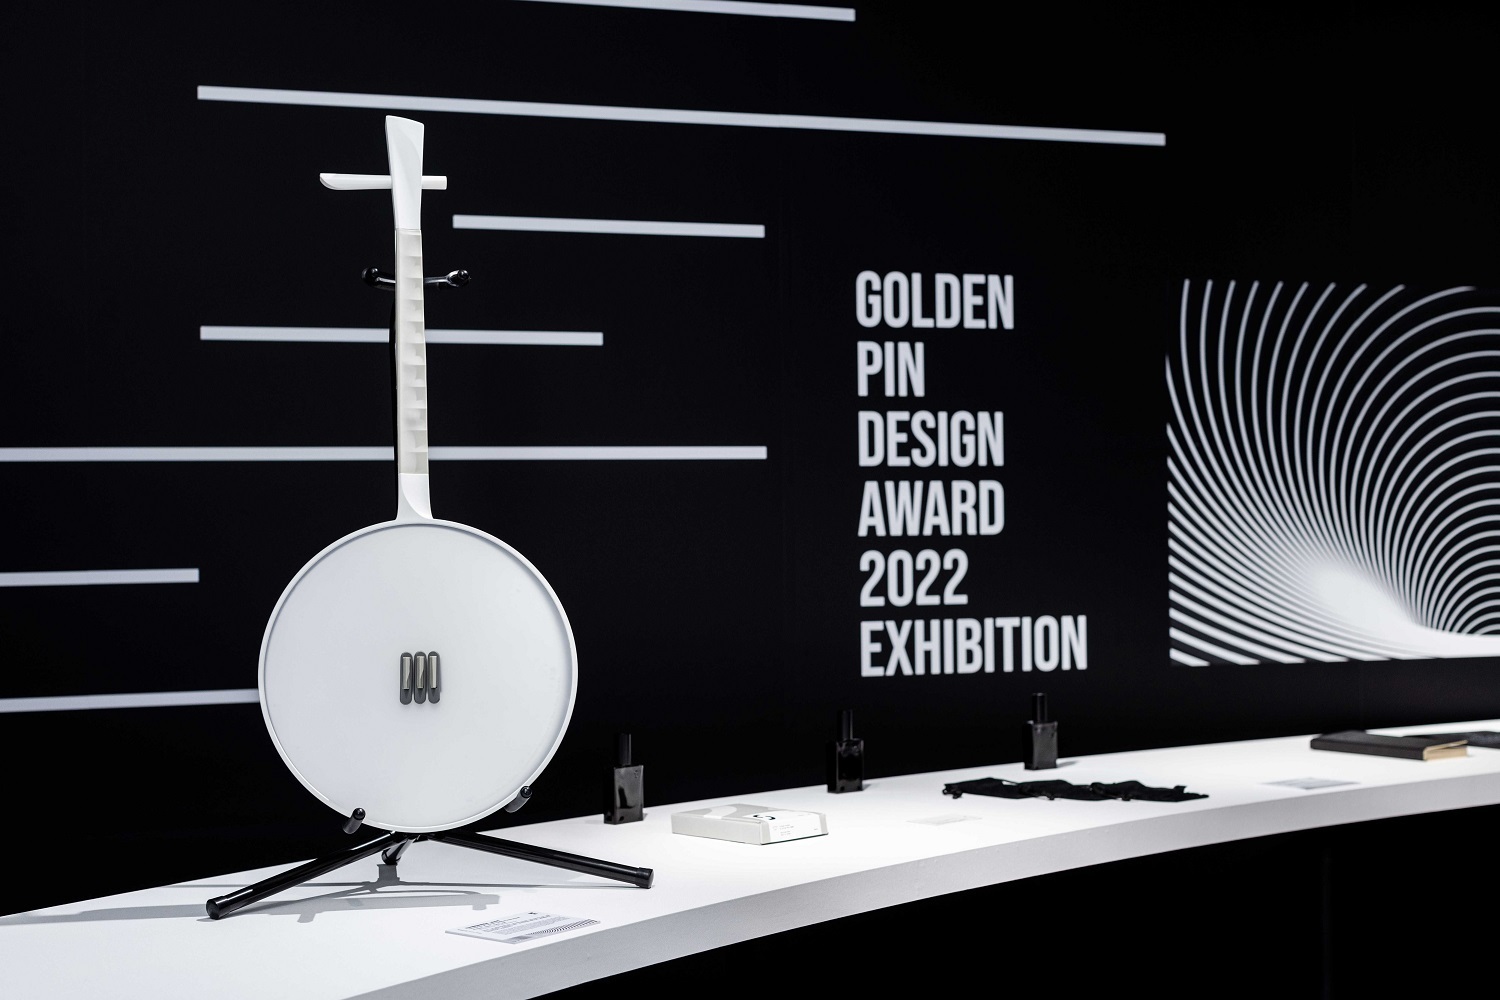 The 2022 Golden Pin Design Award Exhibition